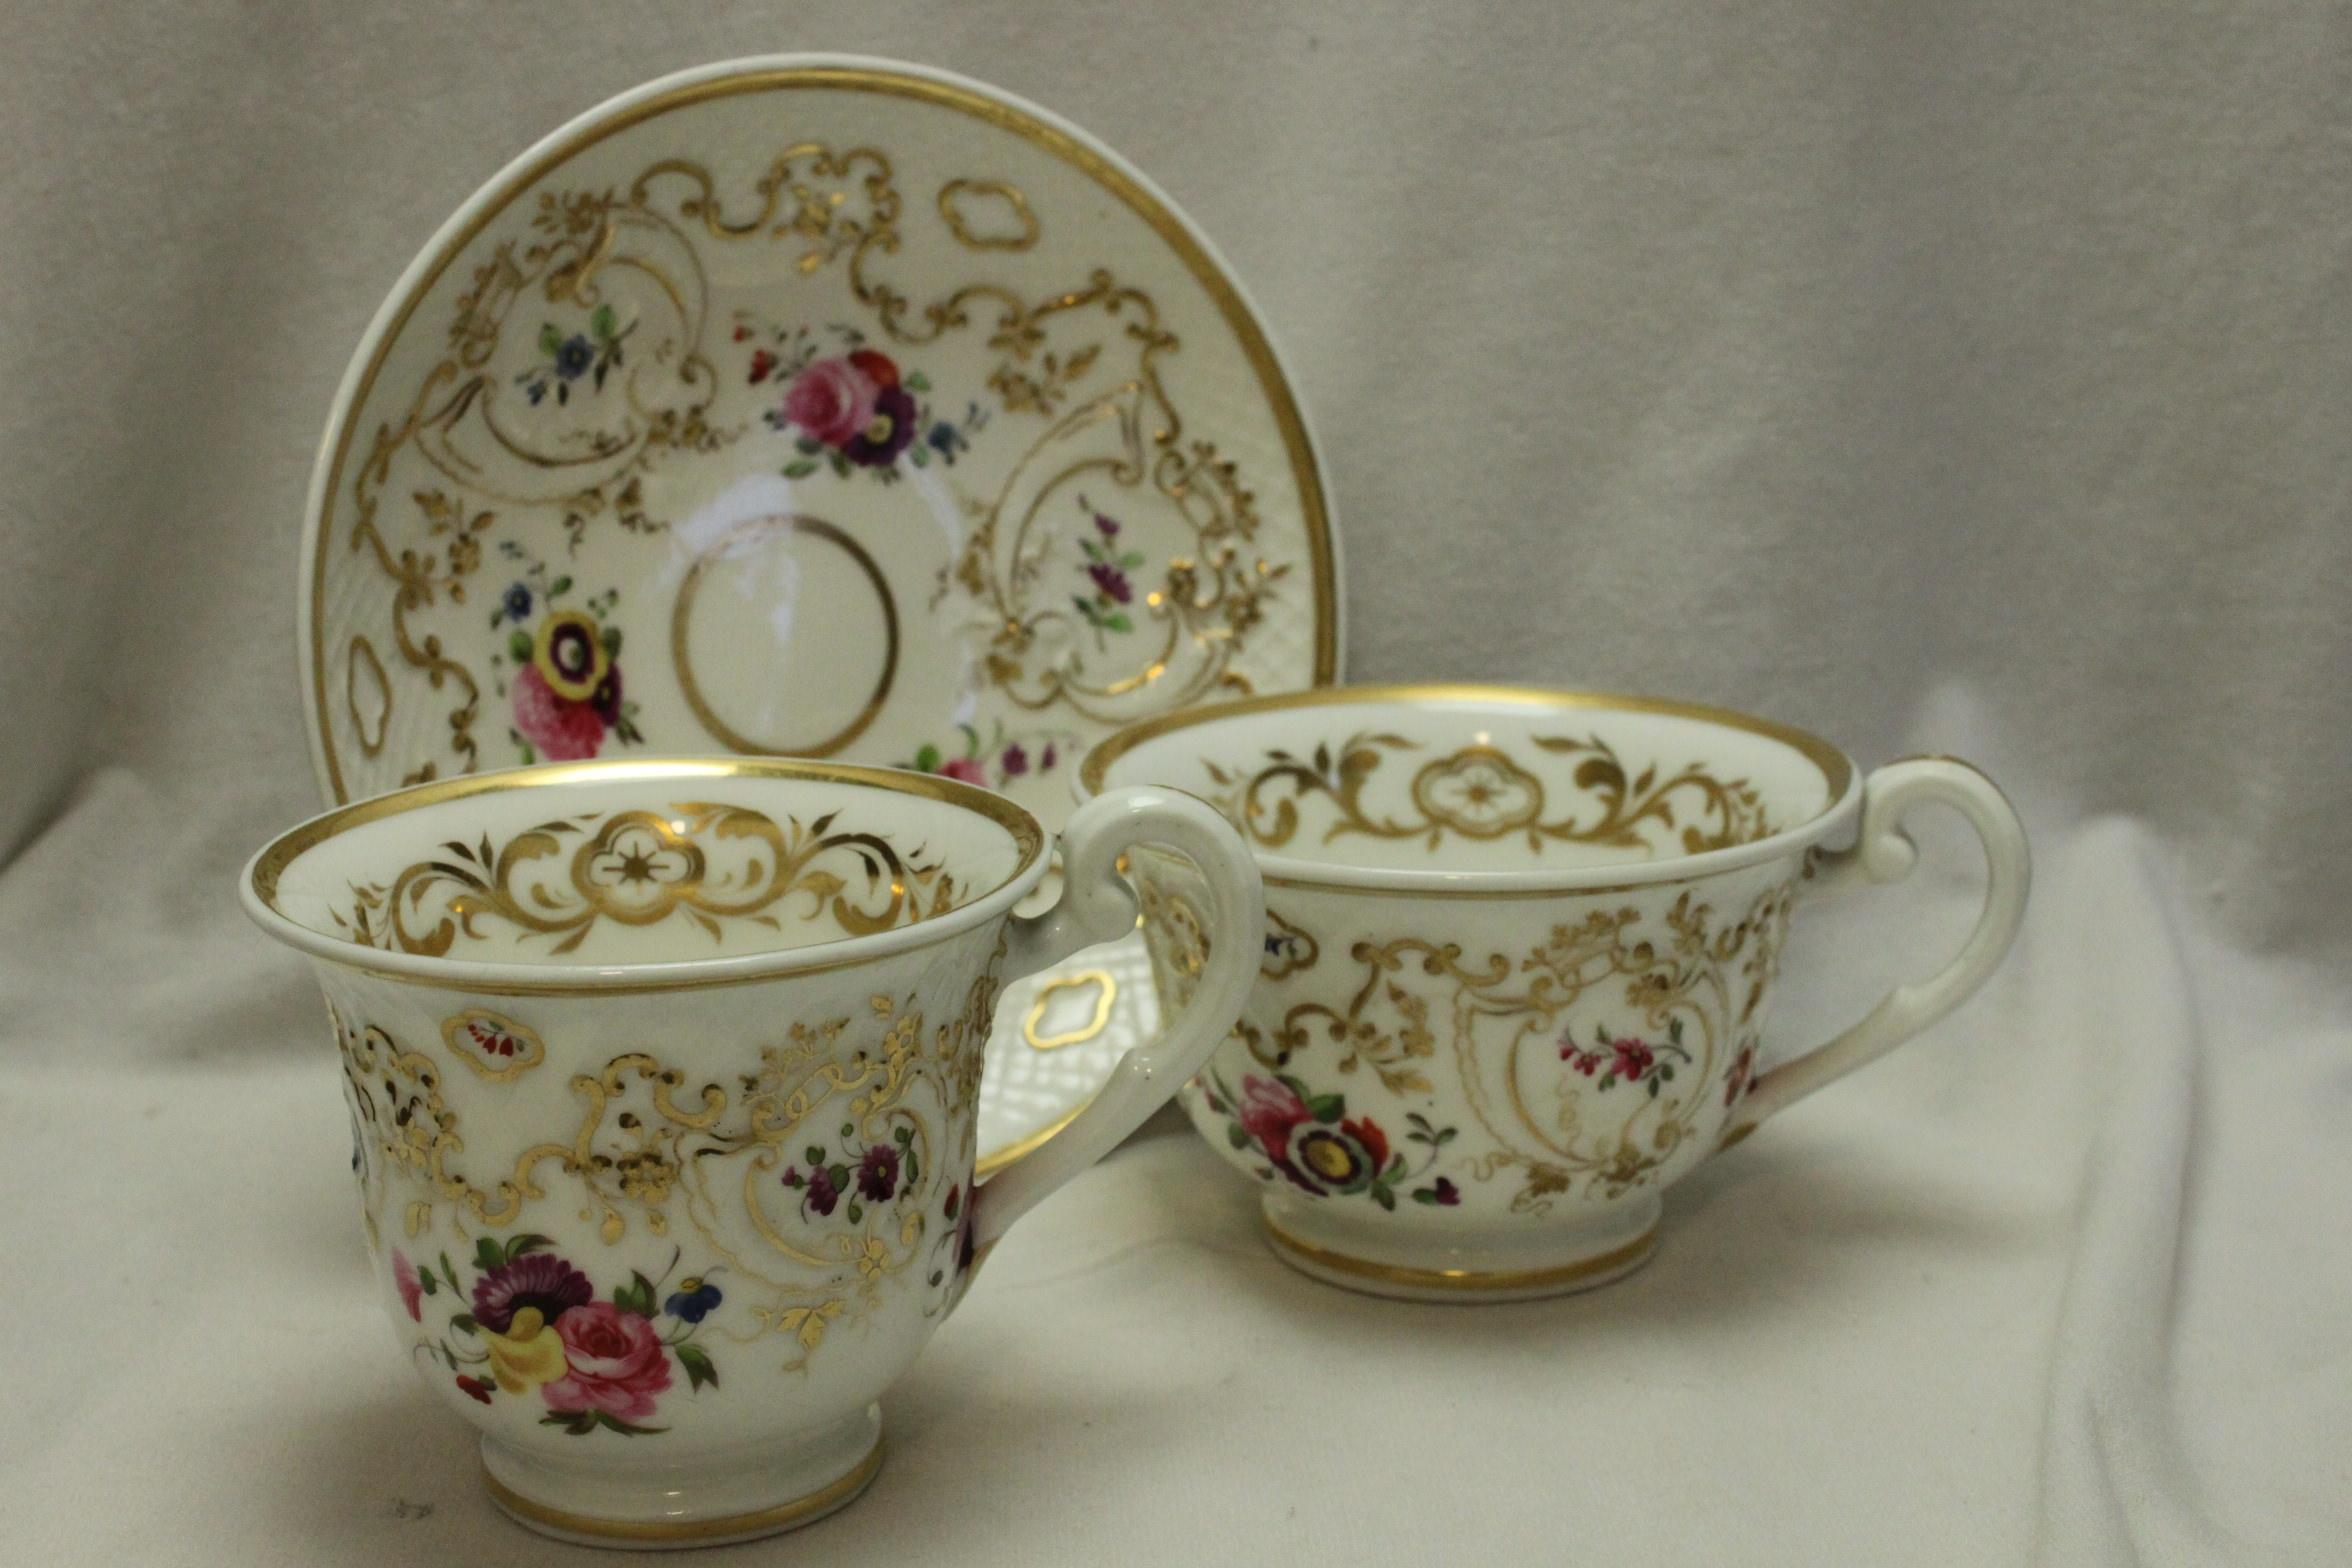 Ce charmant trio en porcelaine peinte et dorée à la main de Ridgway est décoré du motif 2/824 de Ridgway sur leur forme ronde en relief et comprend une tasse à thé, une tasse à café et une soucoupe partagée. La dorure a été réalisée très